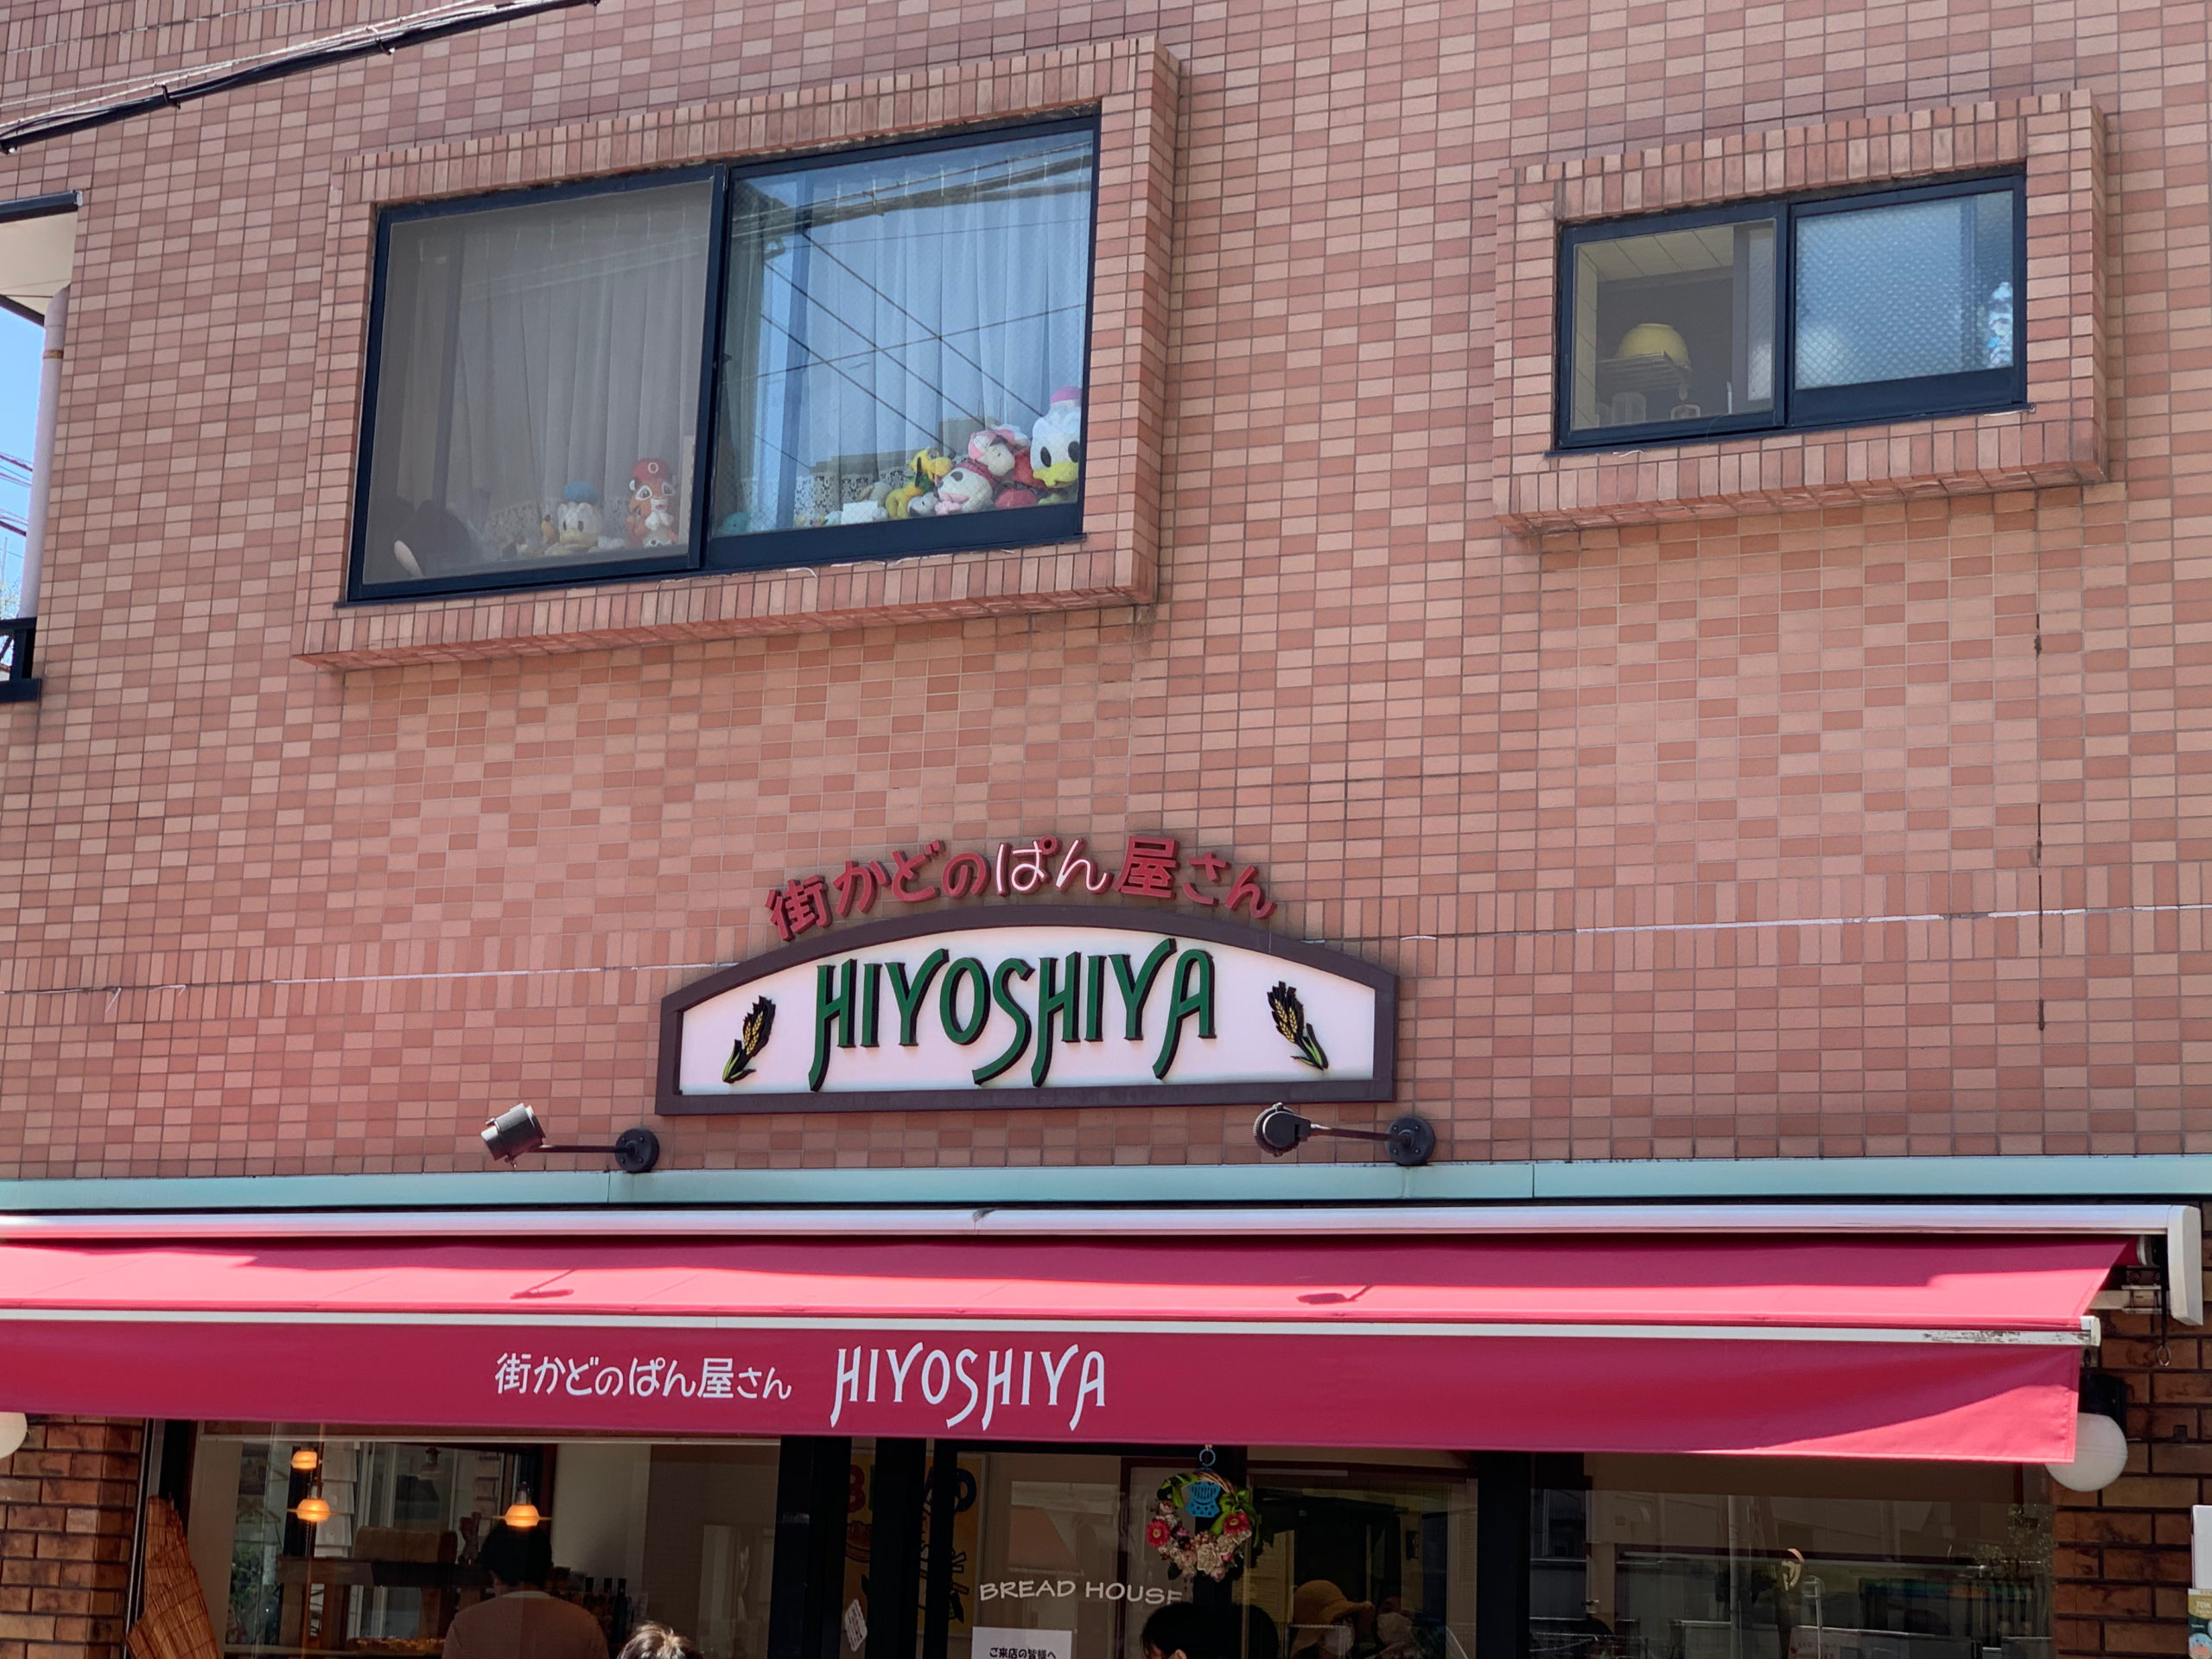 江東区住吉にある気軽にテイクアウトできる美味しいパン屋さん「街かどのパン屋さん日吉屋」は、今も昔も多くのファンが買い物に訪れます